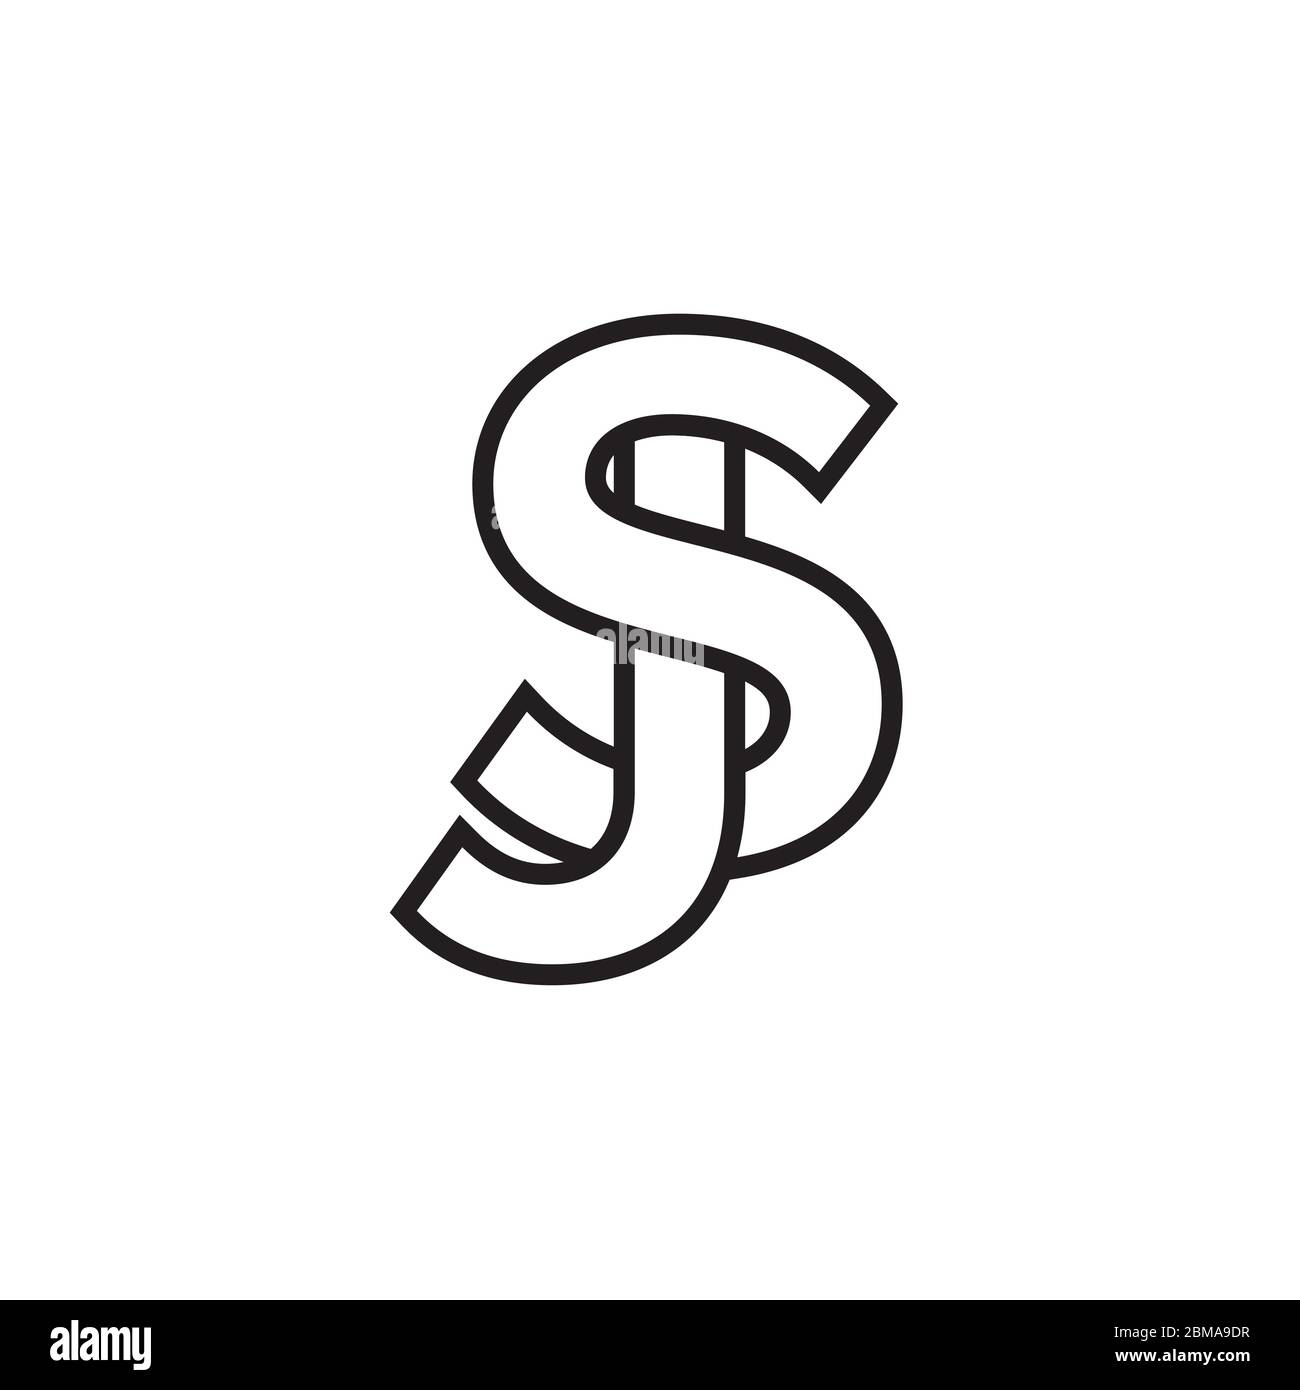 S J / J S letter line logo design vector Stock Vector